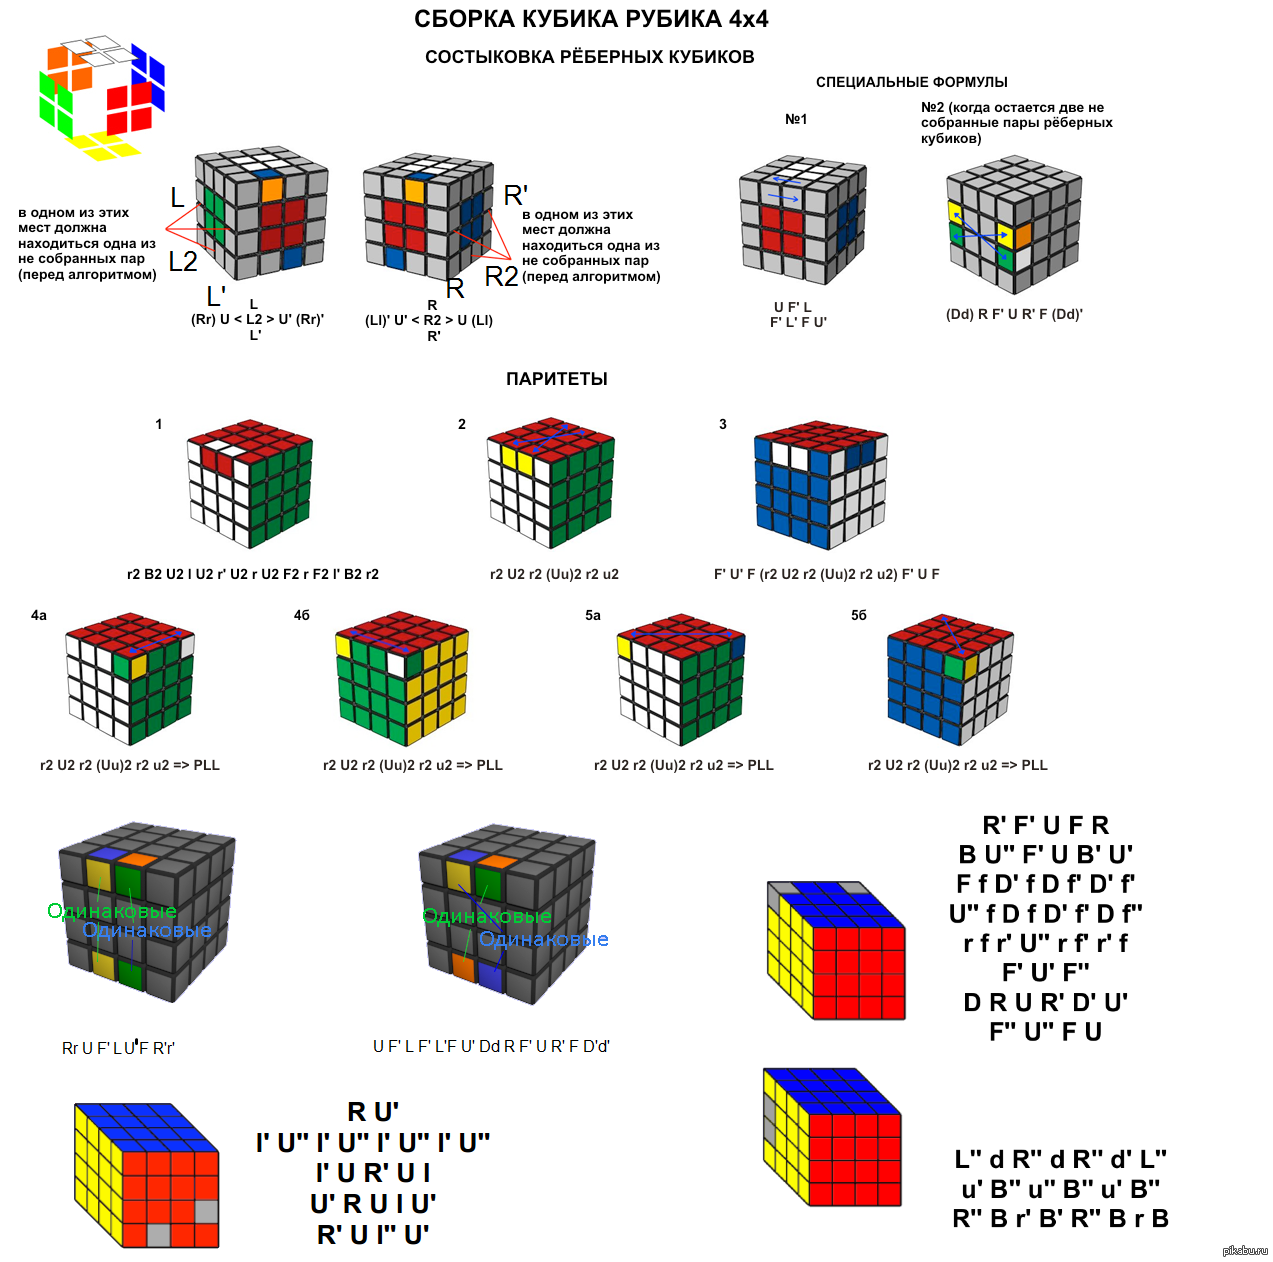 Как сделать в комбинация кубов. 4 На 4 кубик Рубика формулы. Схема для сбора кубика Рубика 4 на4. Сборка кубика 4х4 паритеты. Схема сборки кубика Рубика 3х3.